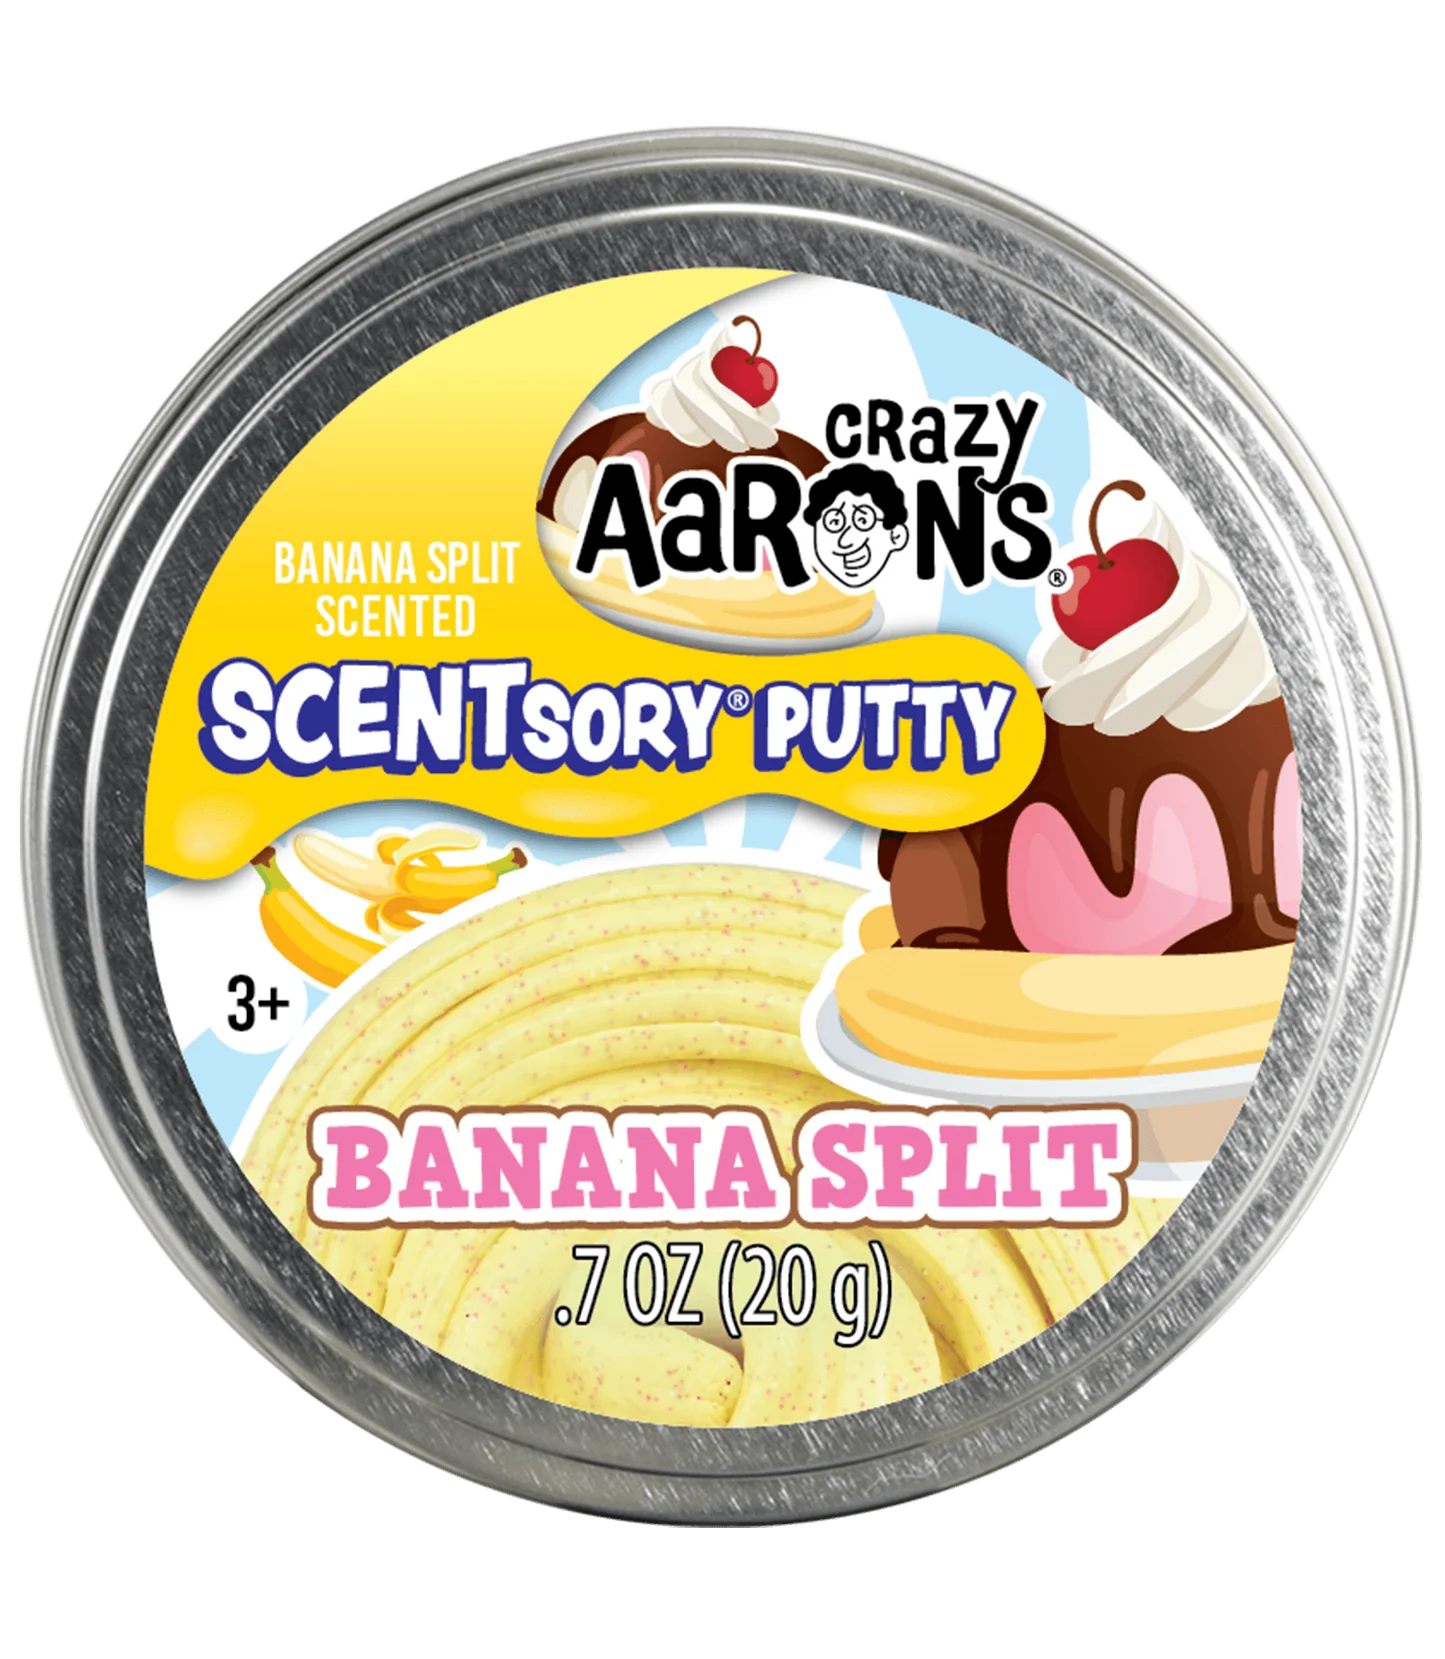 Crazy Aarons Banana Split Scentsory